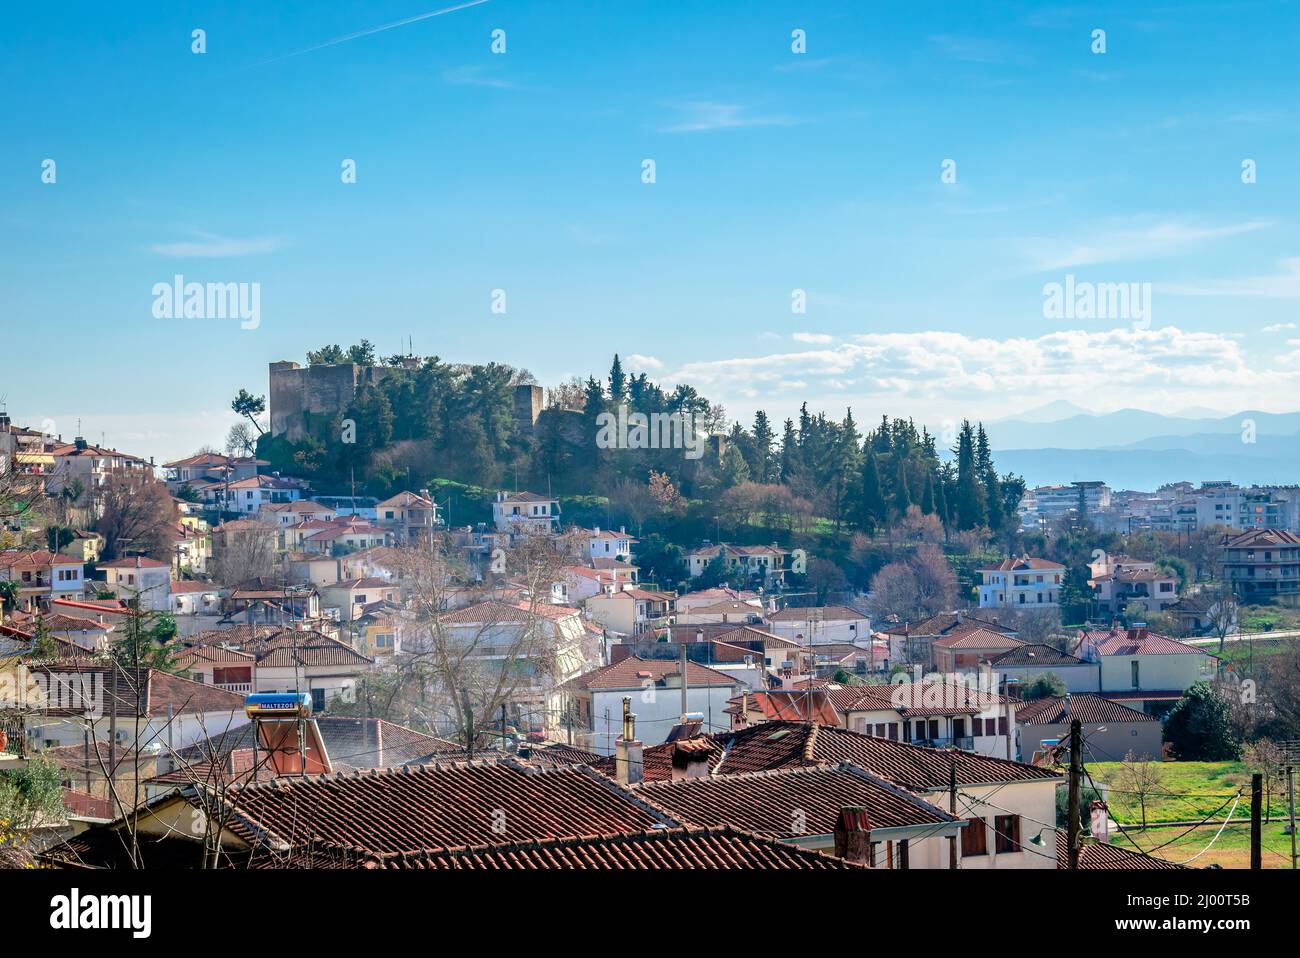 Panoramablick auf die Altstadt von Trikala, in Thessalien, Griechenland, mit dem Hügel Profitis Ilias und der mittelalterlichen byzantinischen Burg. Stockfoto